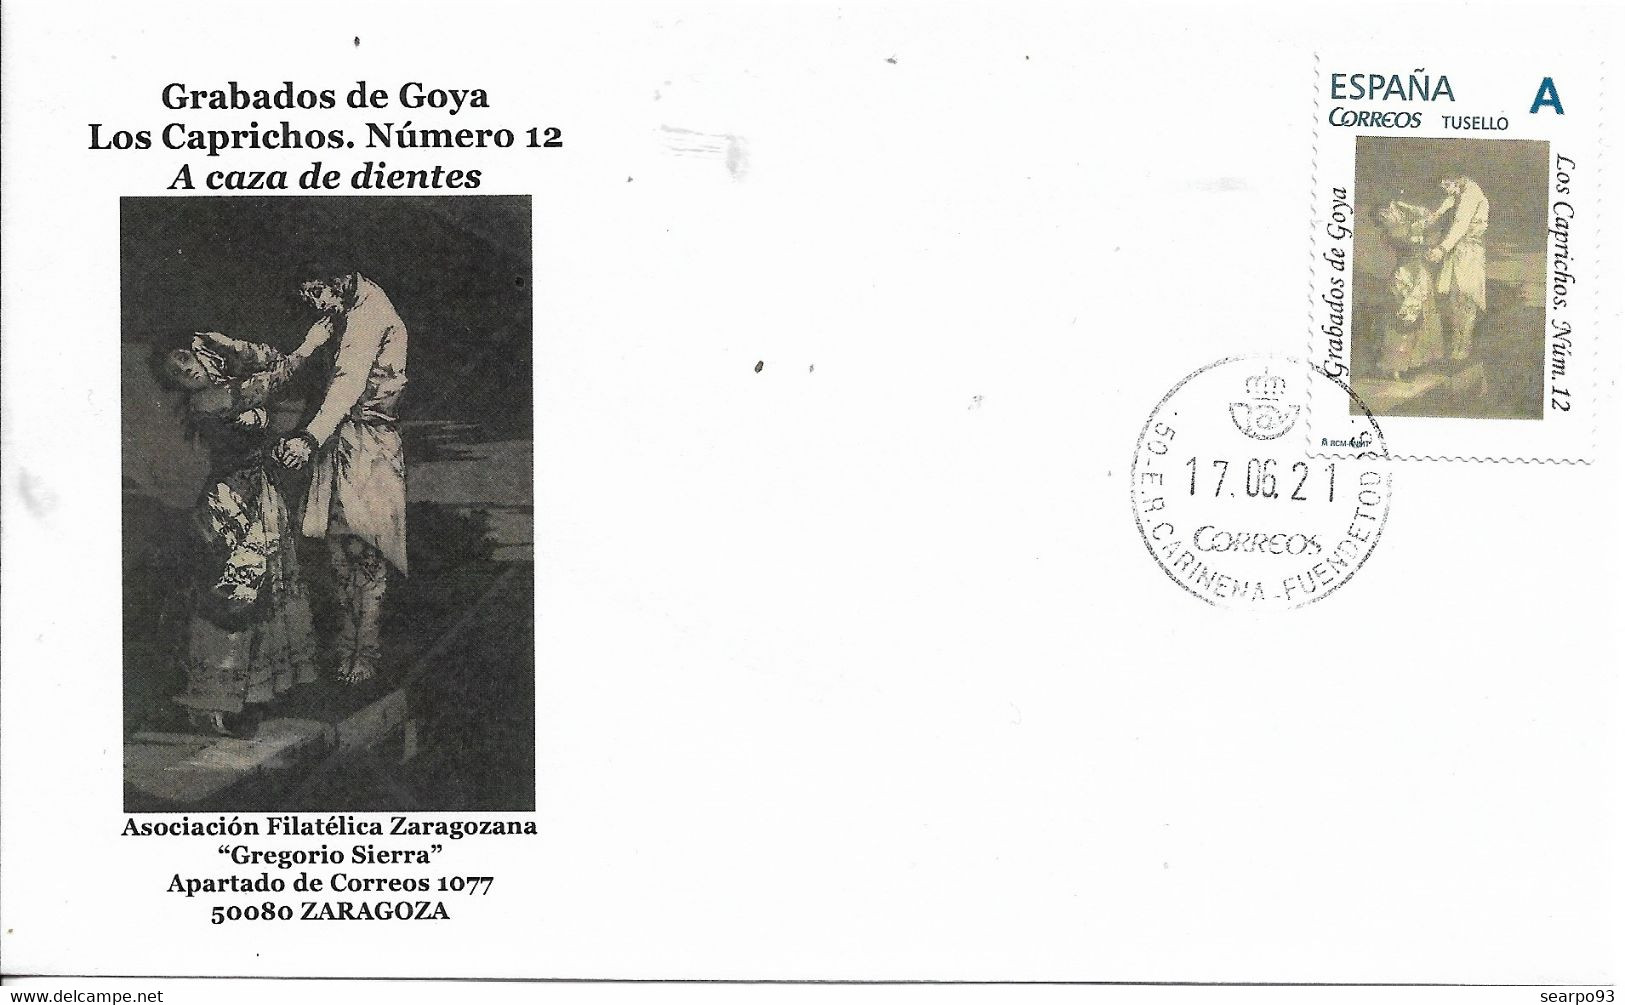 SPAIN. COVER GOYA ENGRAVINGS. LOS CAPRICHOS. 12 - Covers & Documents